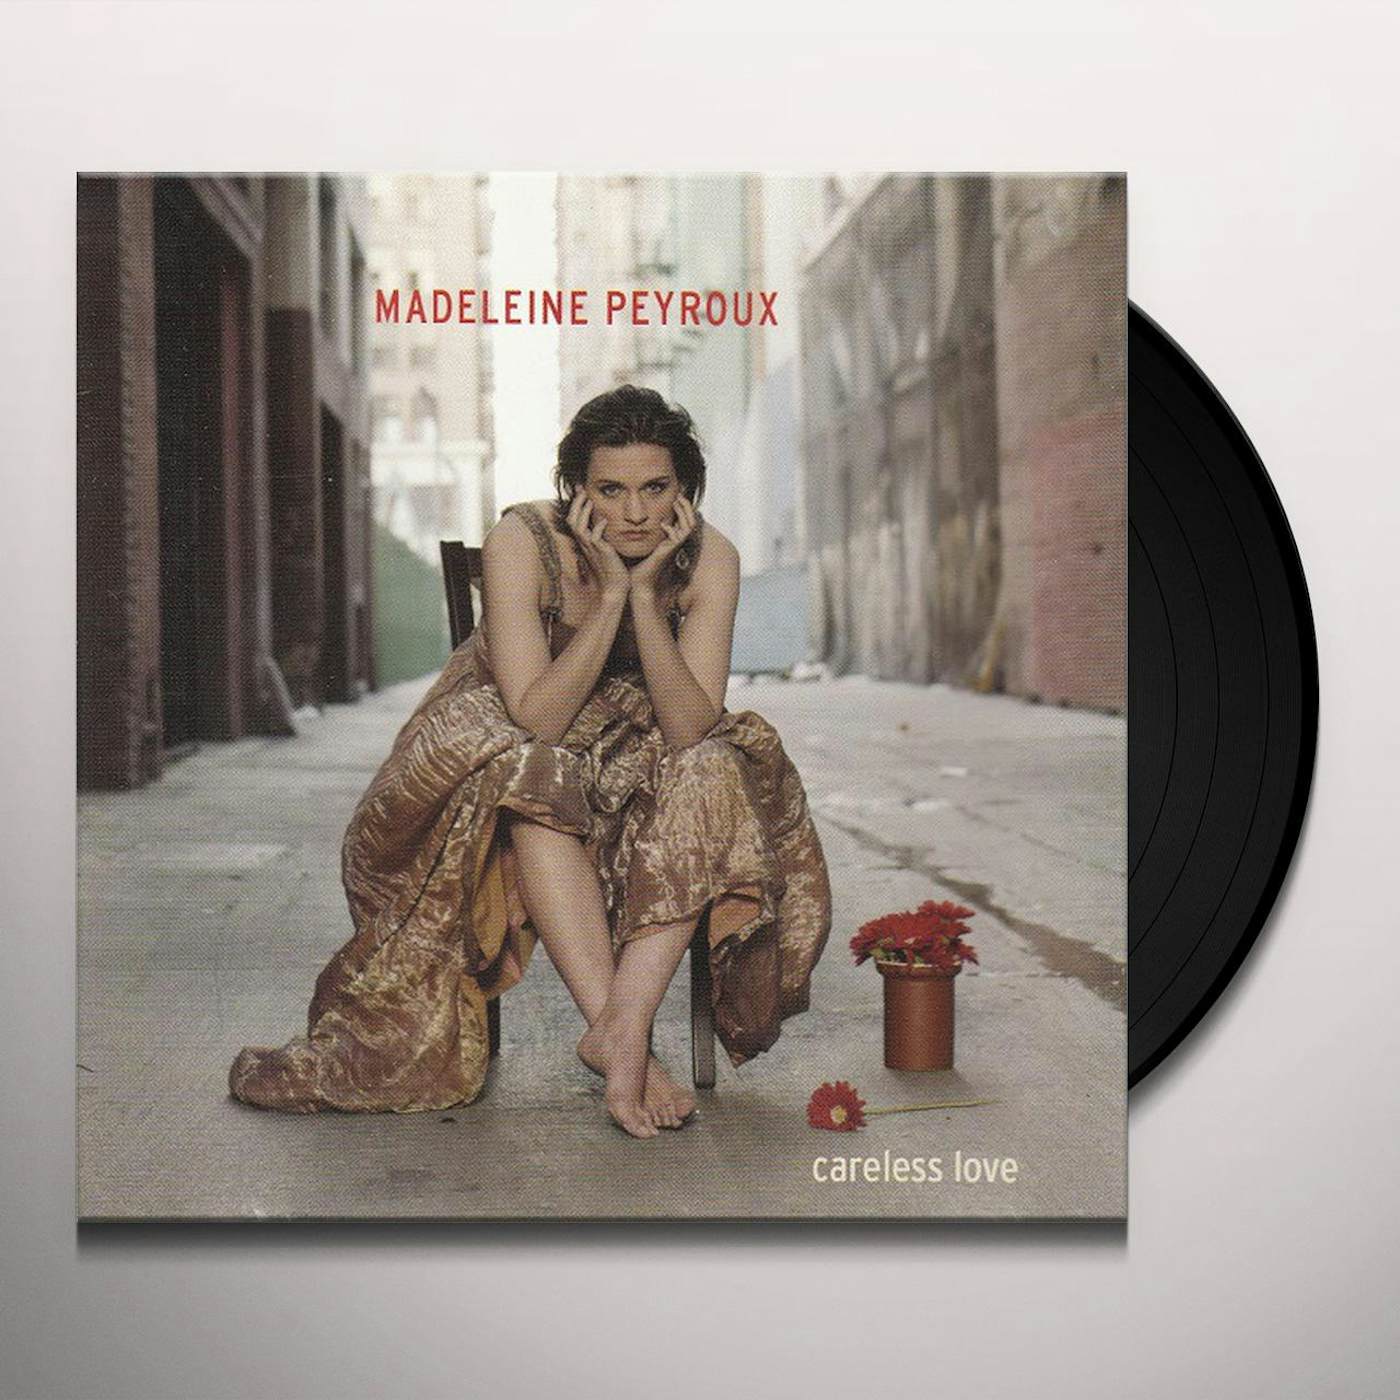 Bare Bones - Album by Madeleine Peyroux